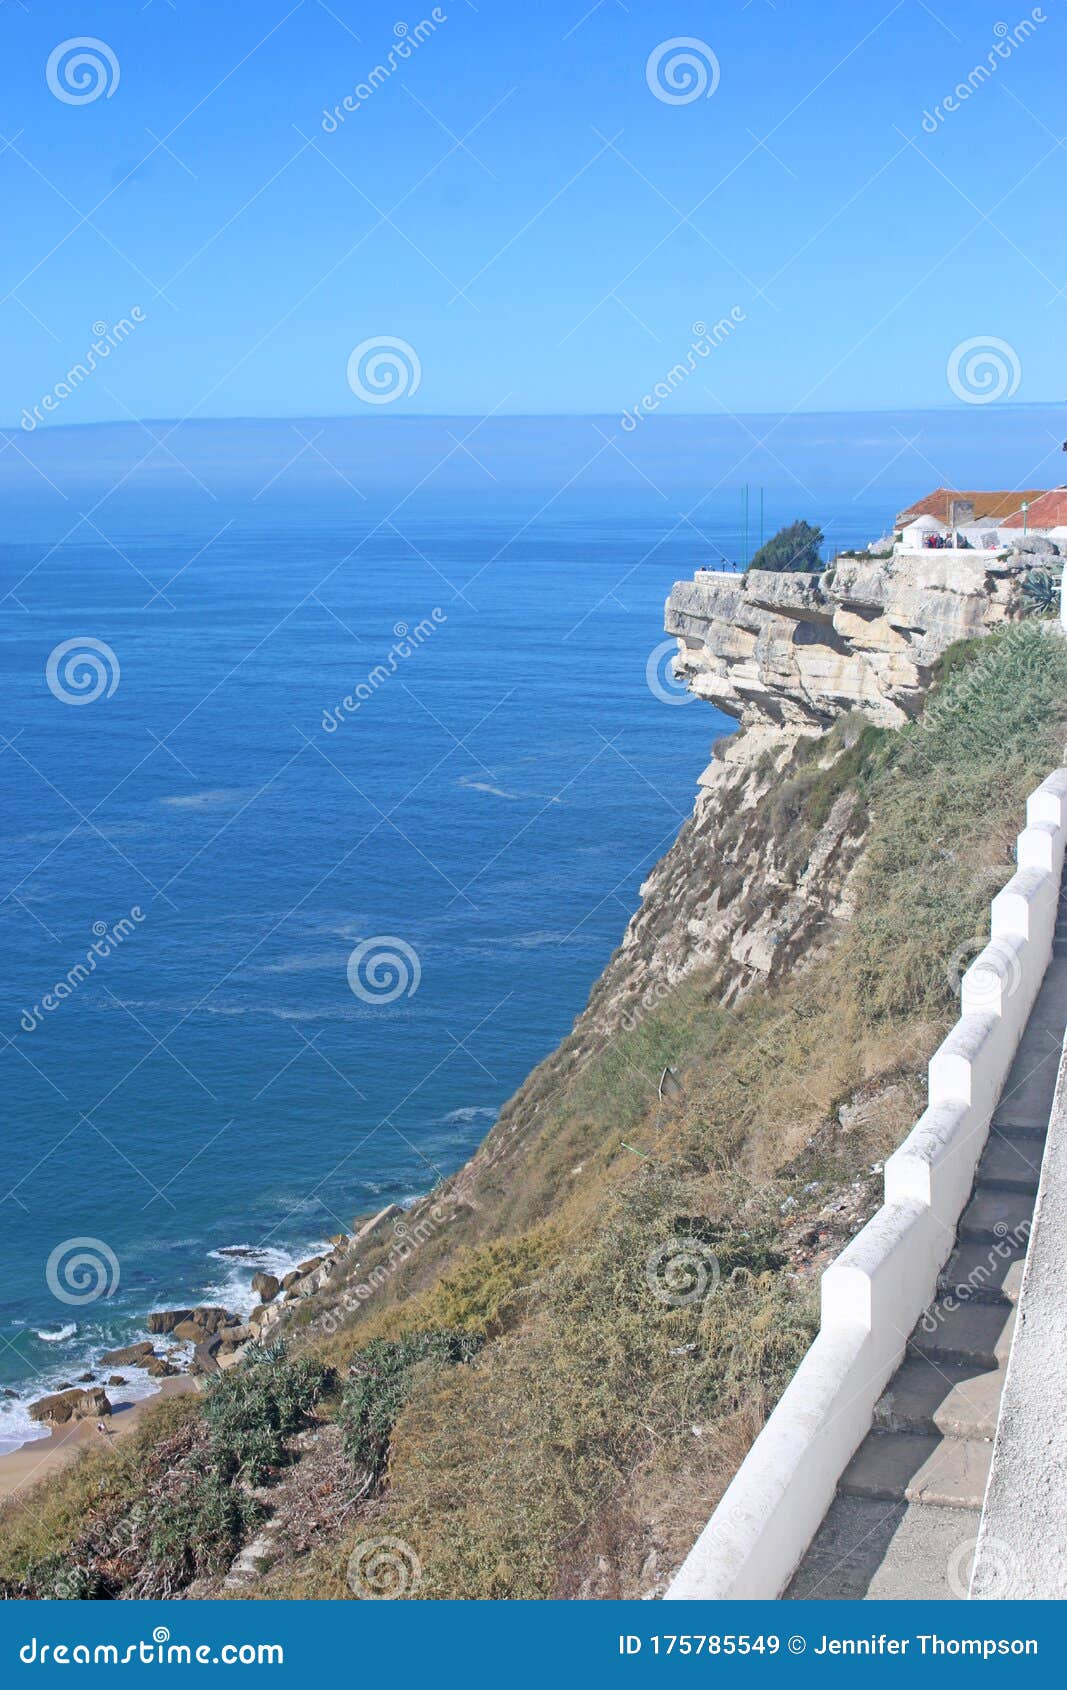 cliffs of sitio, nazare, portugal